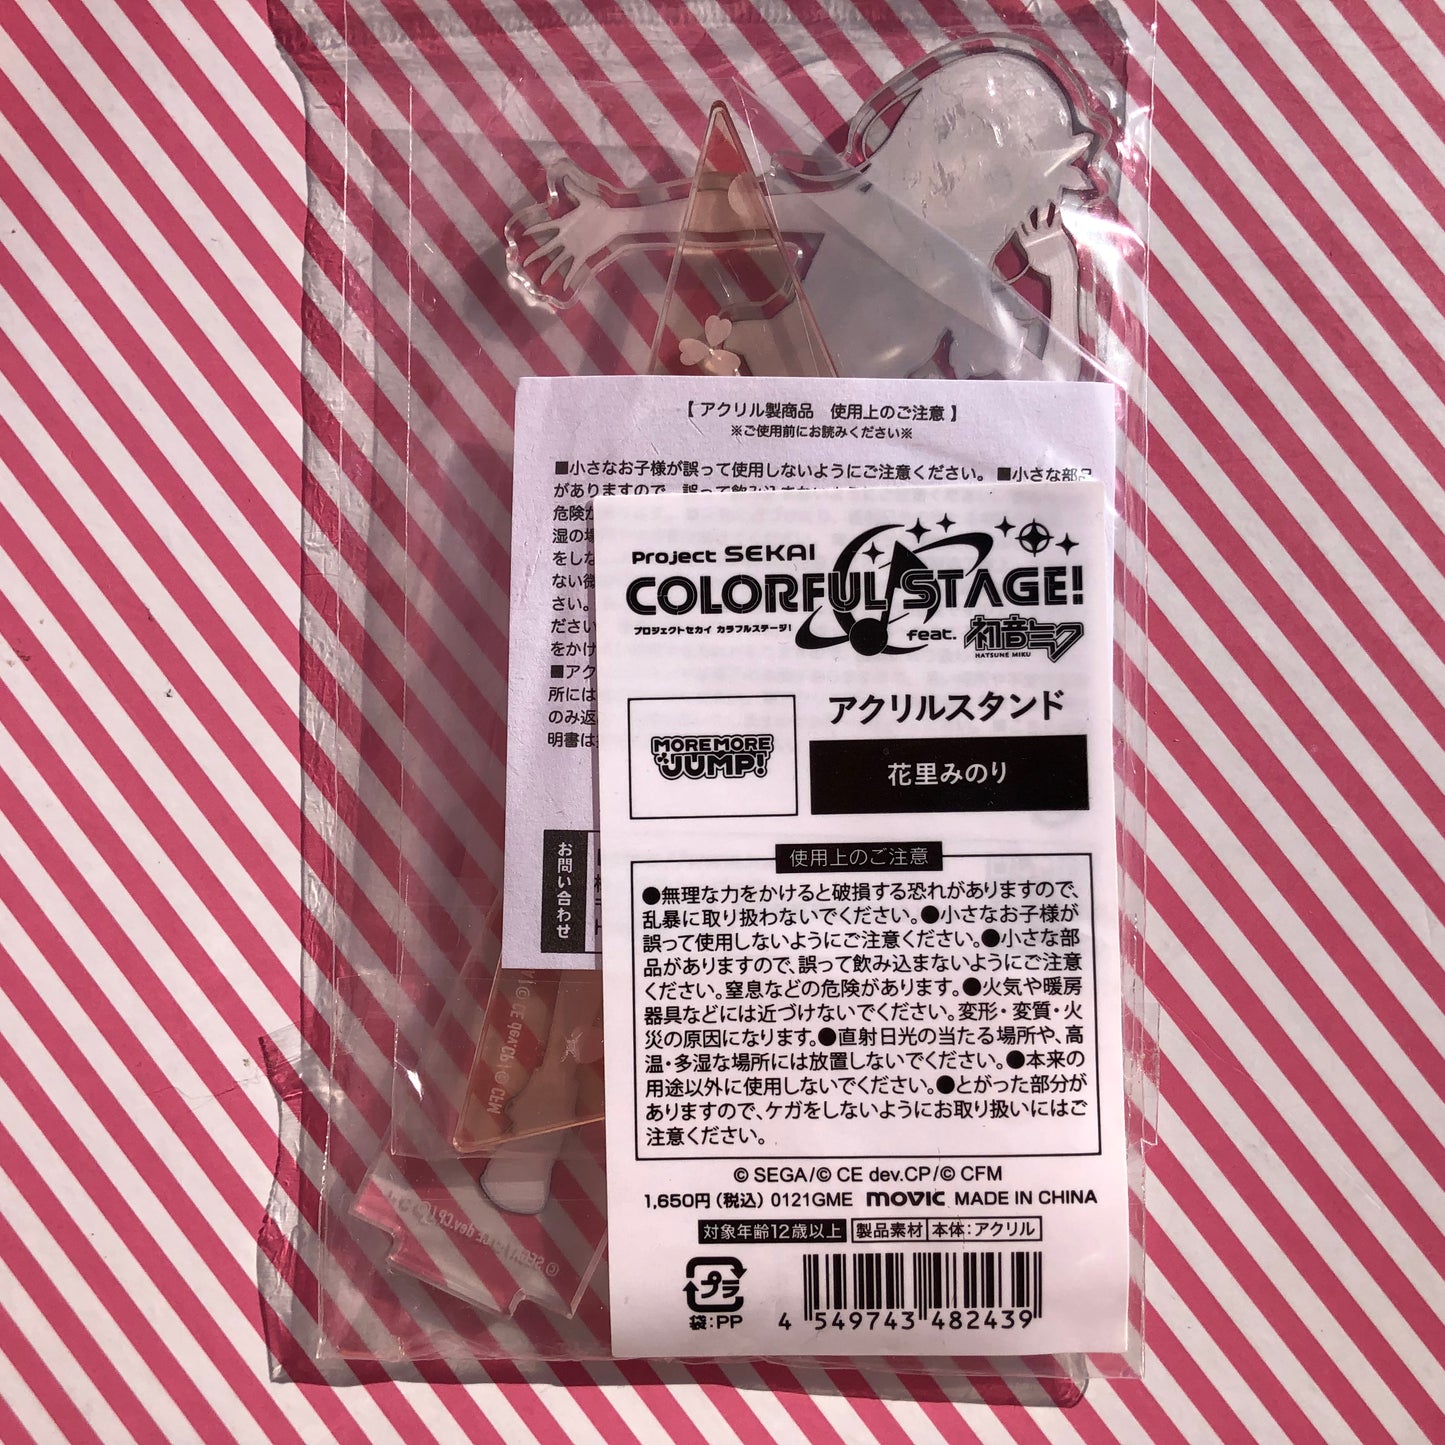 Project Sekai Colorful Stage Acrylic Stand! feat. Hatsune Miku Hanasato Minori / vol.1